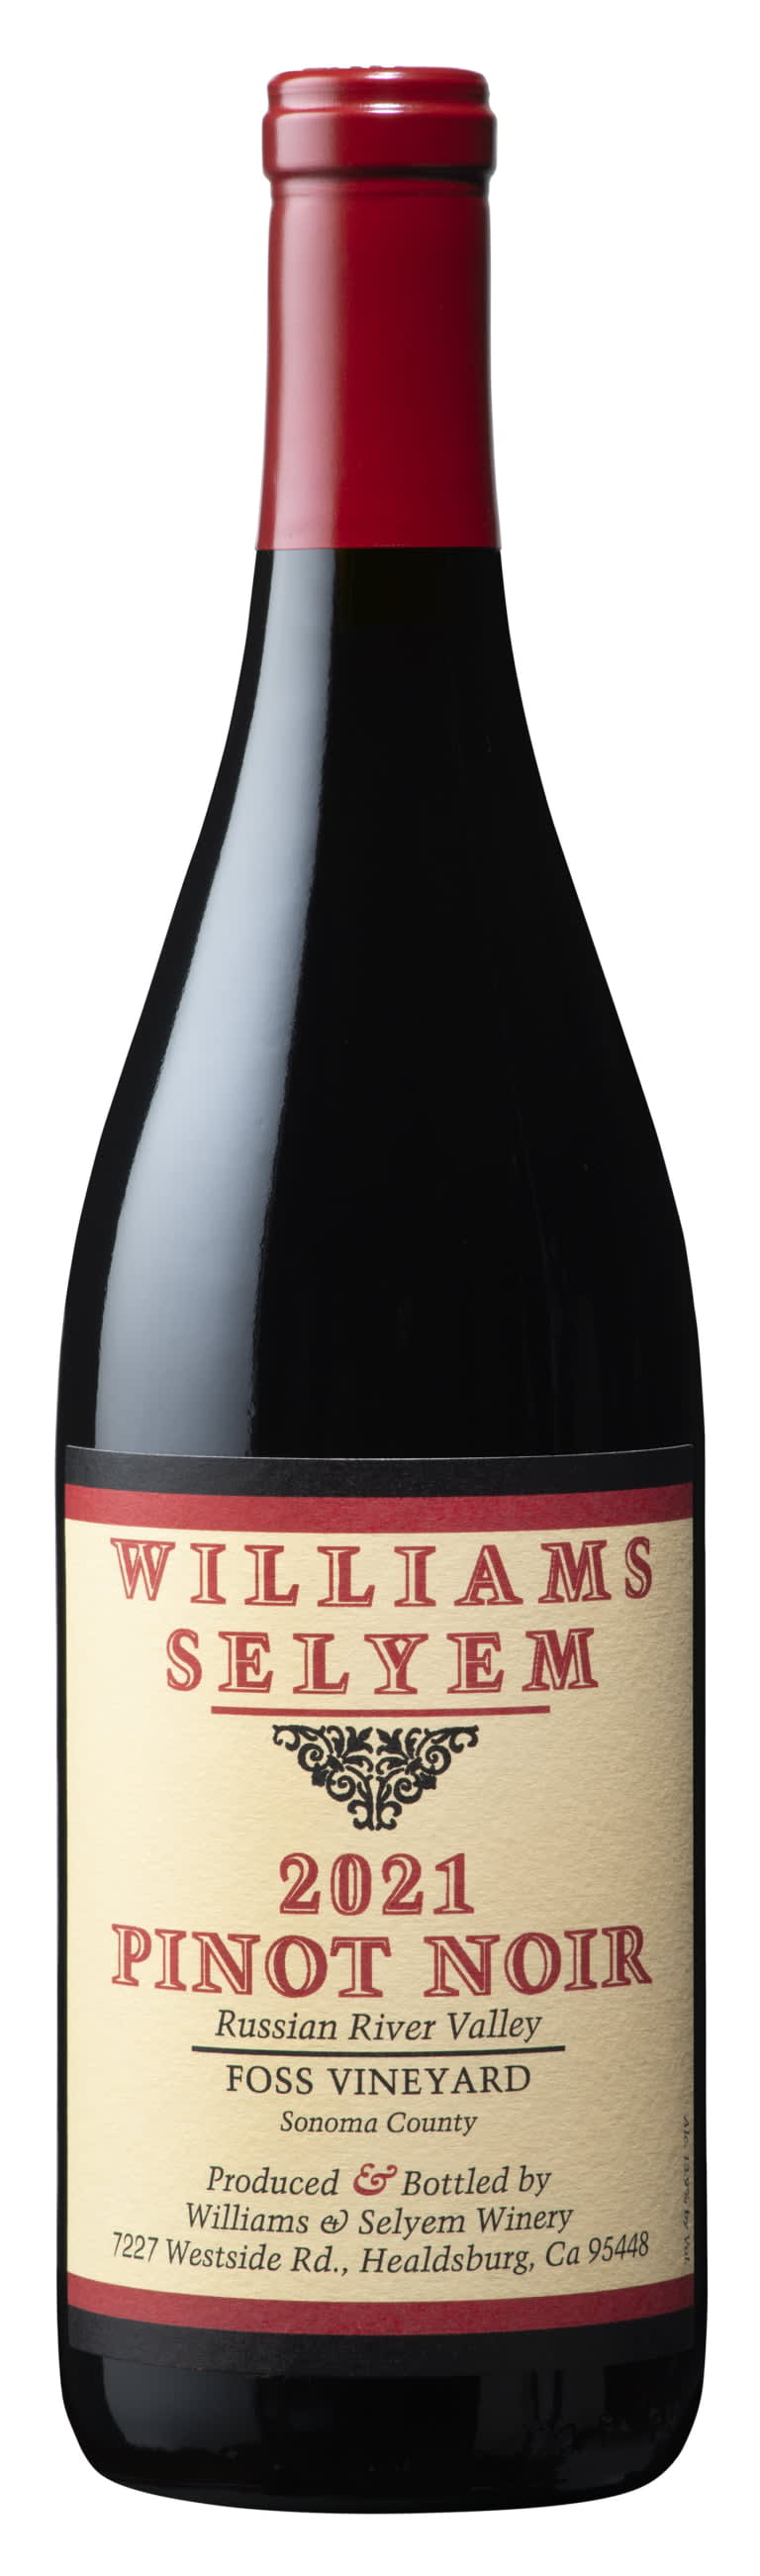 Williams Selyem - Foss Vineyard Pinot Noir 2021 (750ml) (750ml)